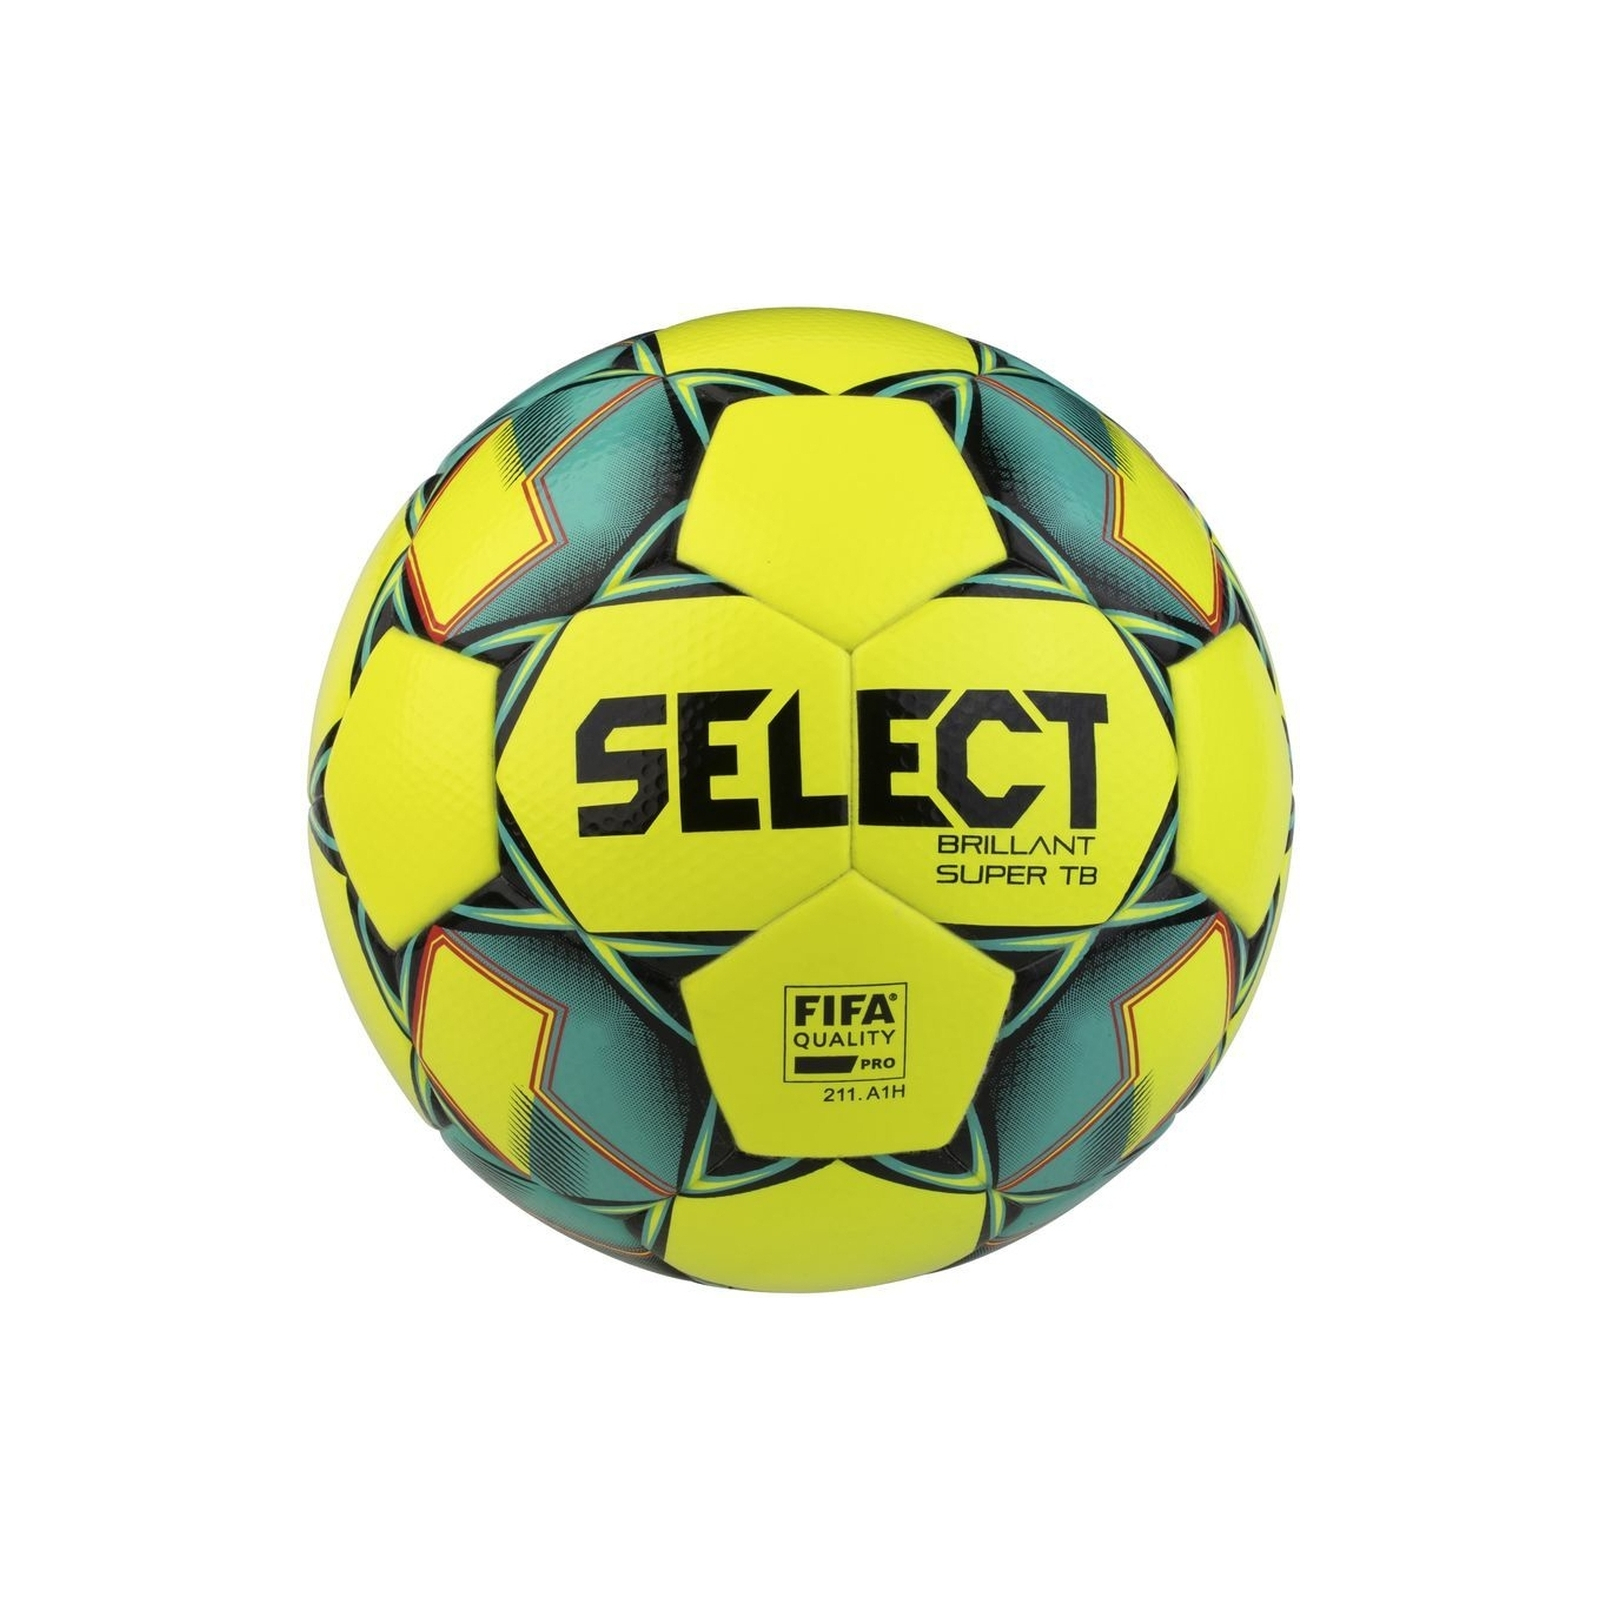 Мяч футбольный Select Brillant Super TB FIFA жовто-зелений Уні 5 (5703543236374)